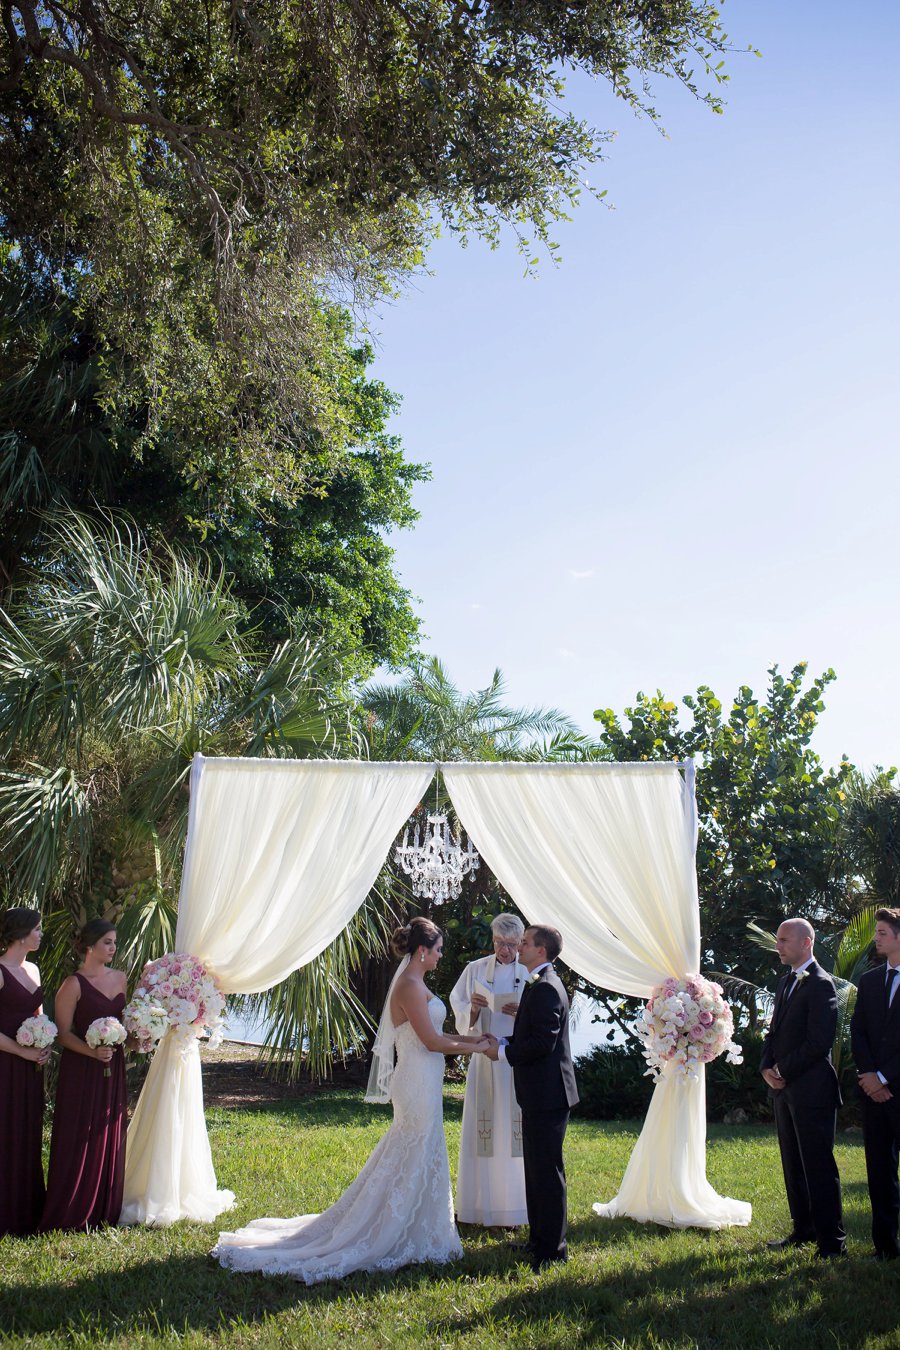 A Pink & White Classically Romantic Florida Wedding via TheELD.com